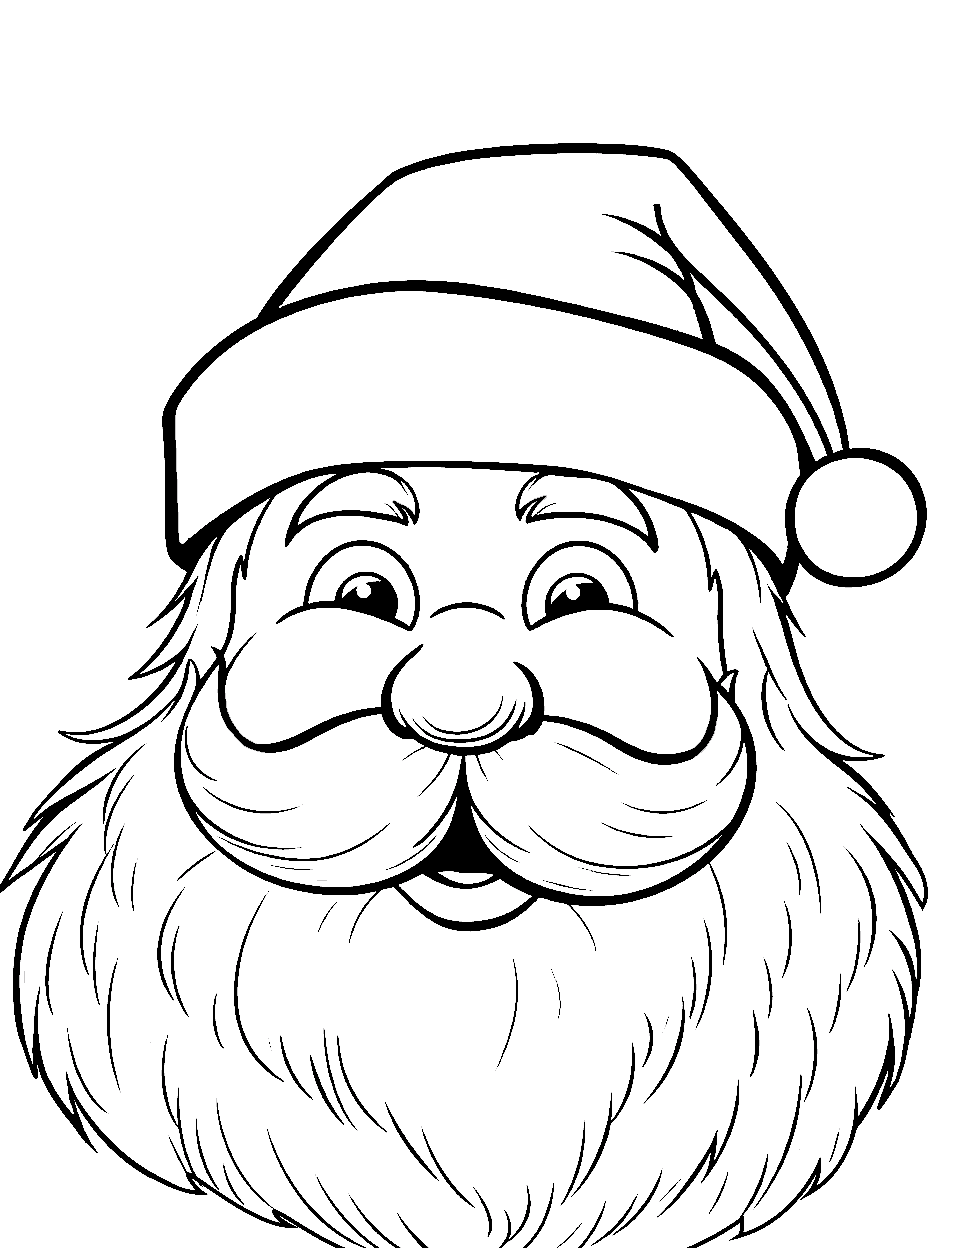 Santa coloring pages free printable sheets